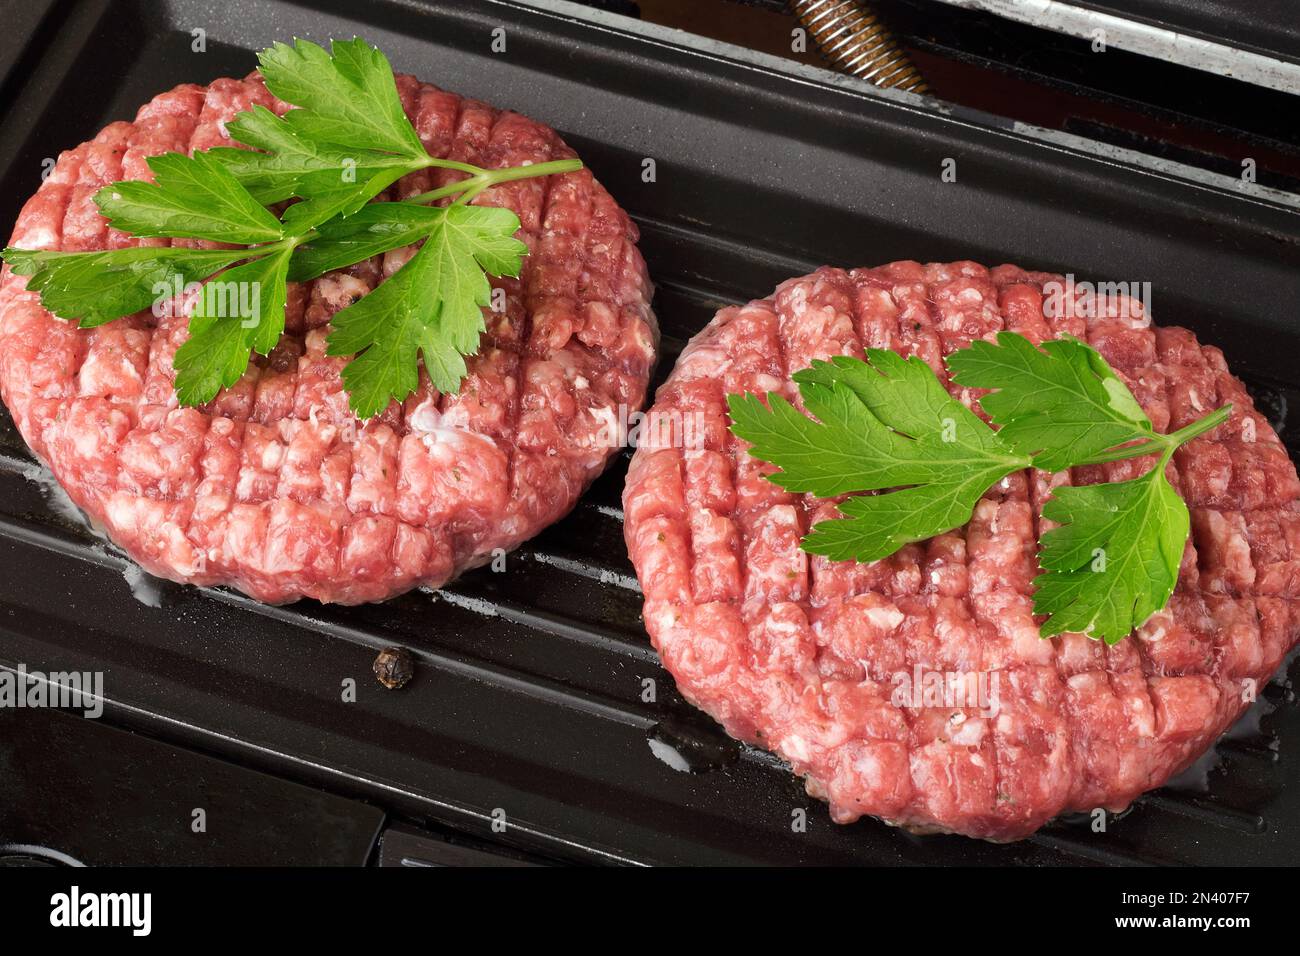 Viande de boeuf haché cru steak côtelettes hamburger frites sur un gril chaud. Côtelette pour hamburger avec légumes et épices. Banque D'Images